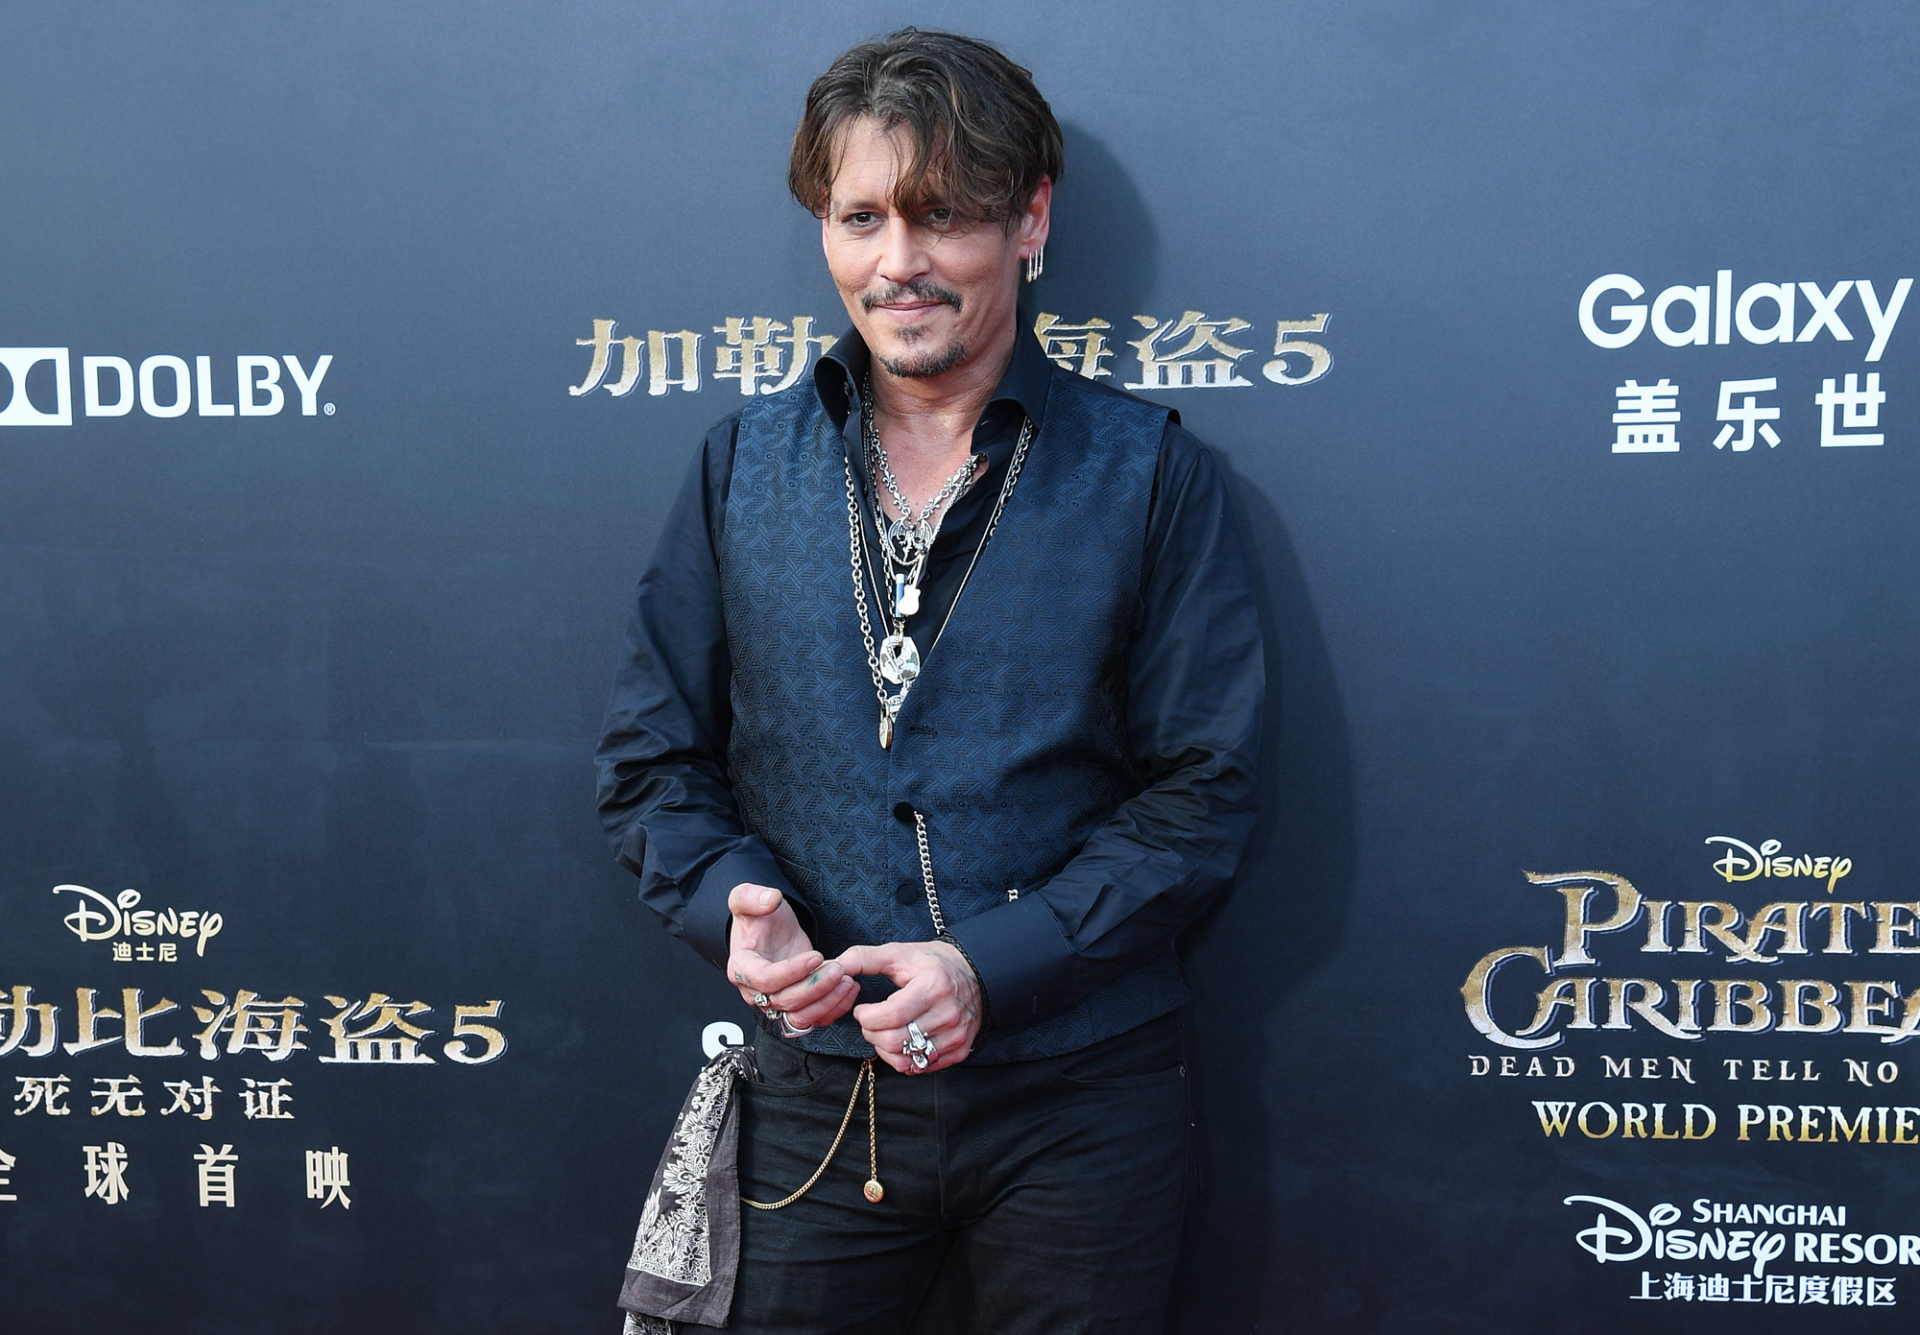 Johnny Deppet rendbe kellett hozni Cannes előtt - Eléggé koszos volt